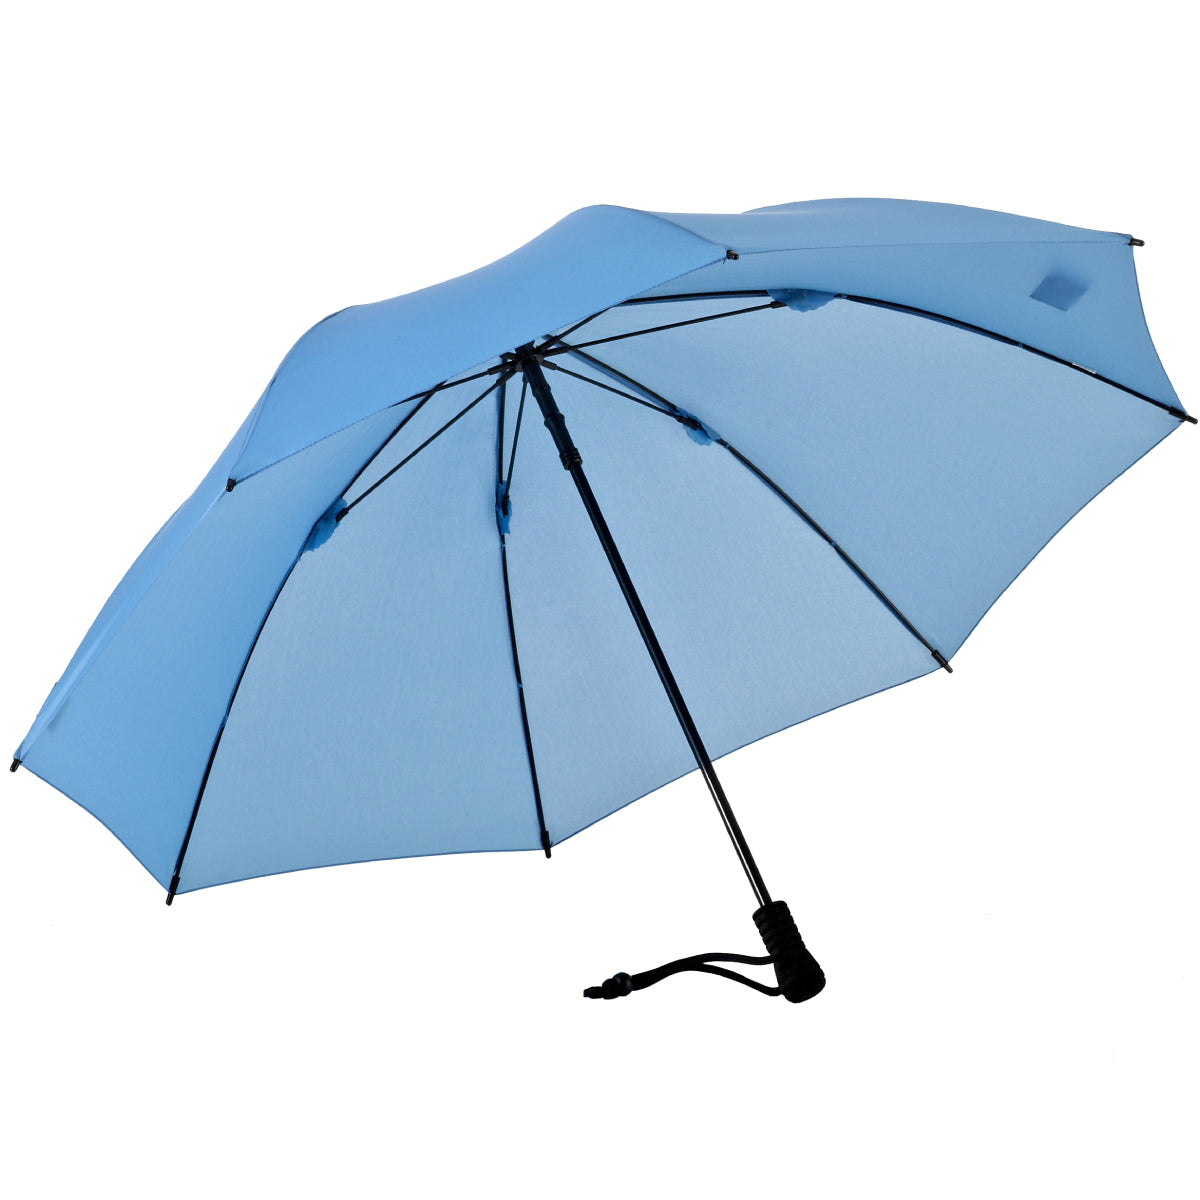 EuroSCHIRM EuroSCHIRM Swing – Liteflex USA Umbrella